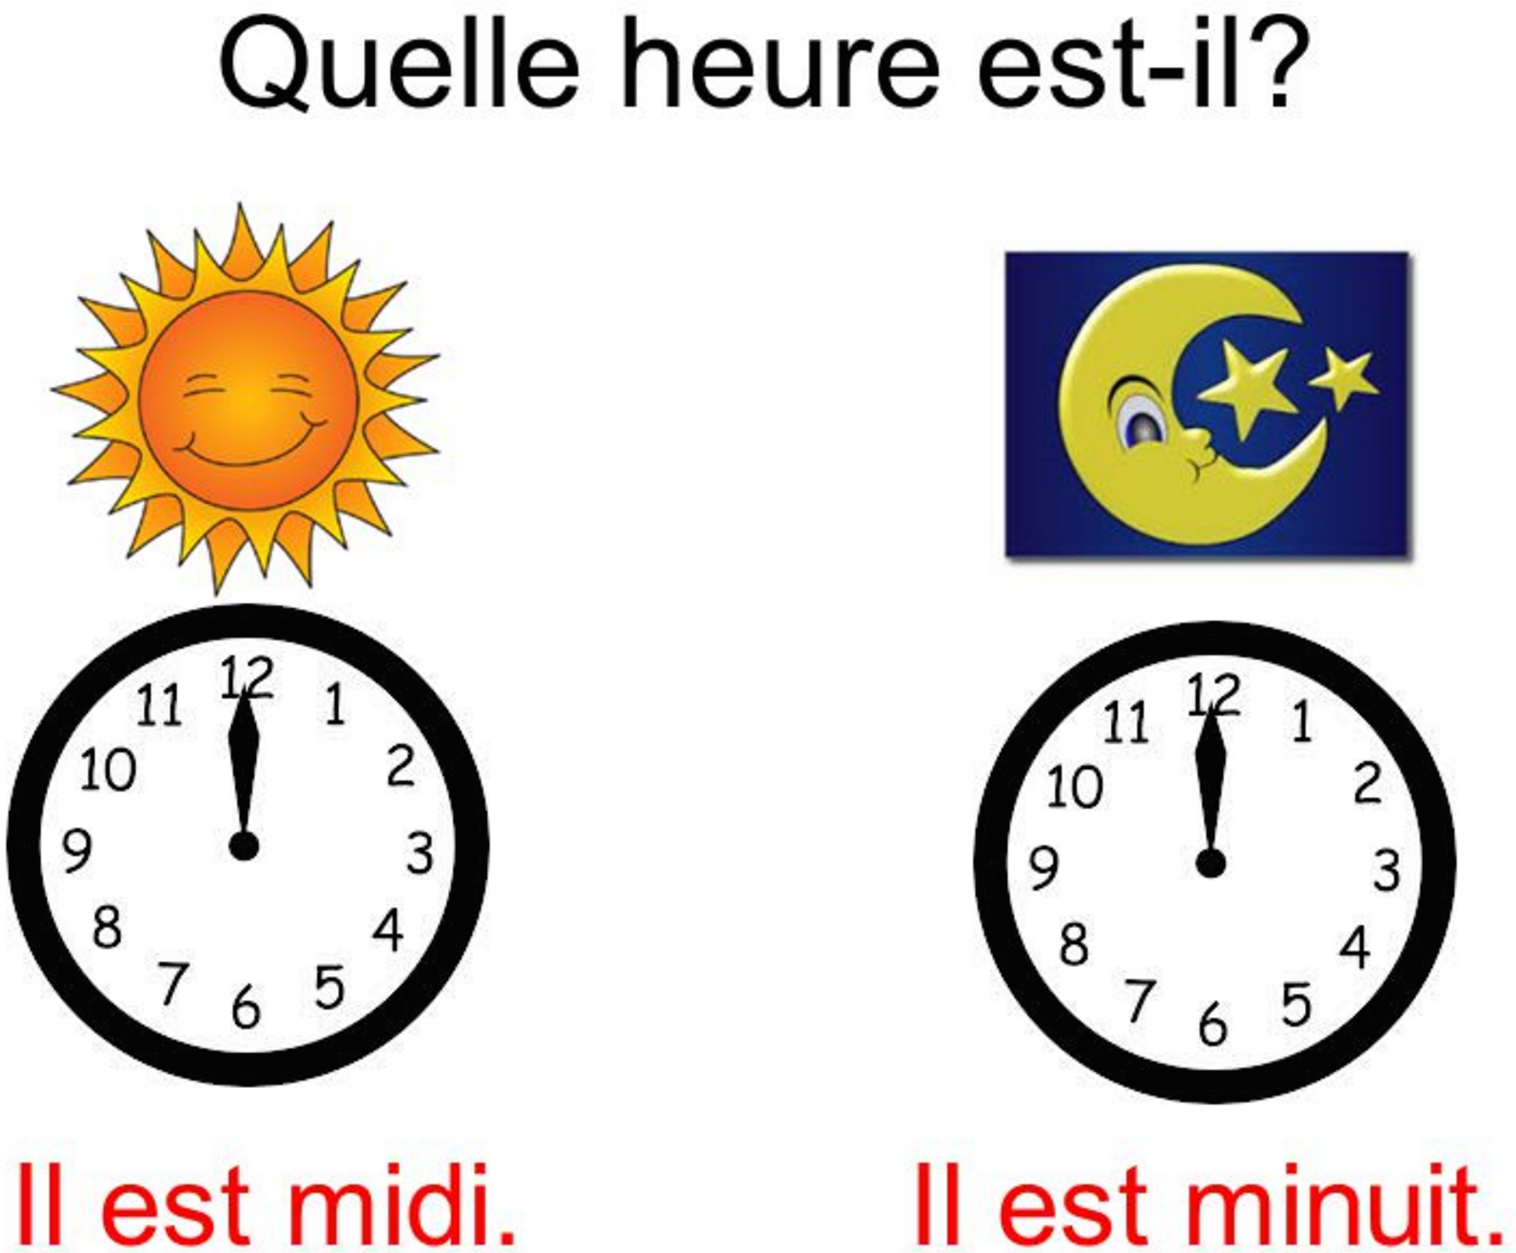 Il est temps. Часы во французском языке. Обозначение времени во французском языке. Часы по французски. Время на французском языке часы.